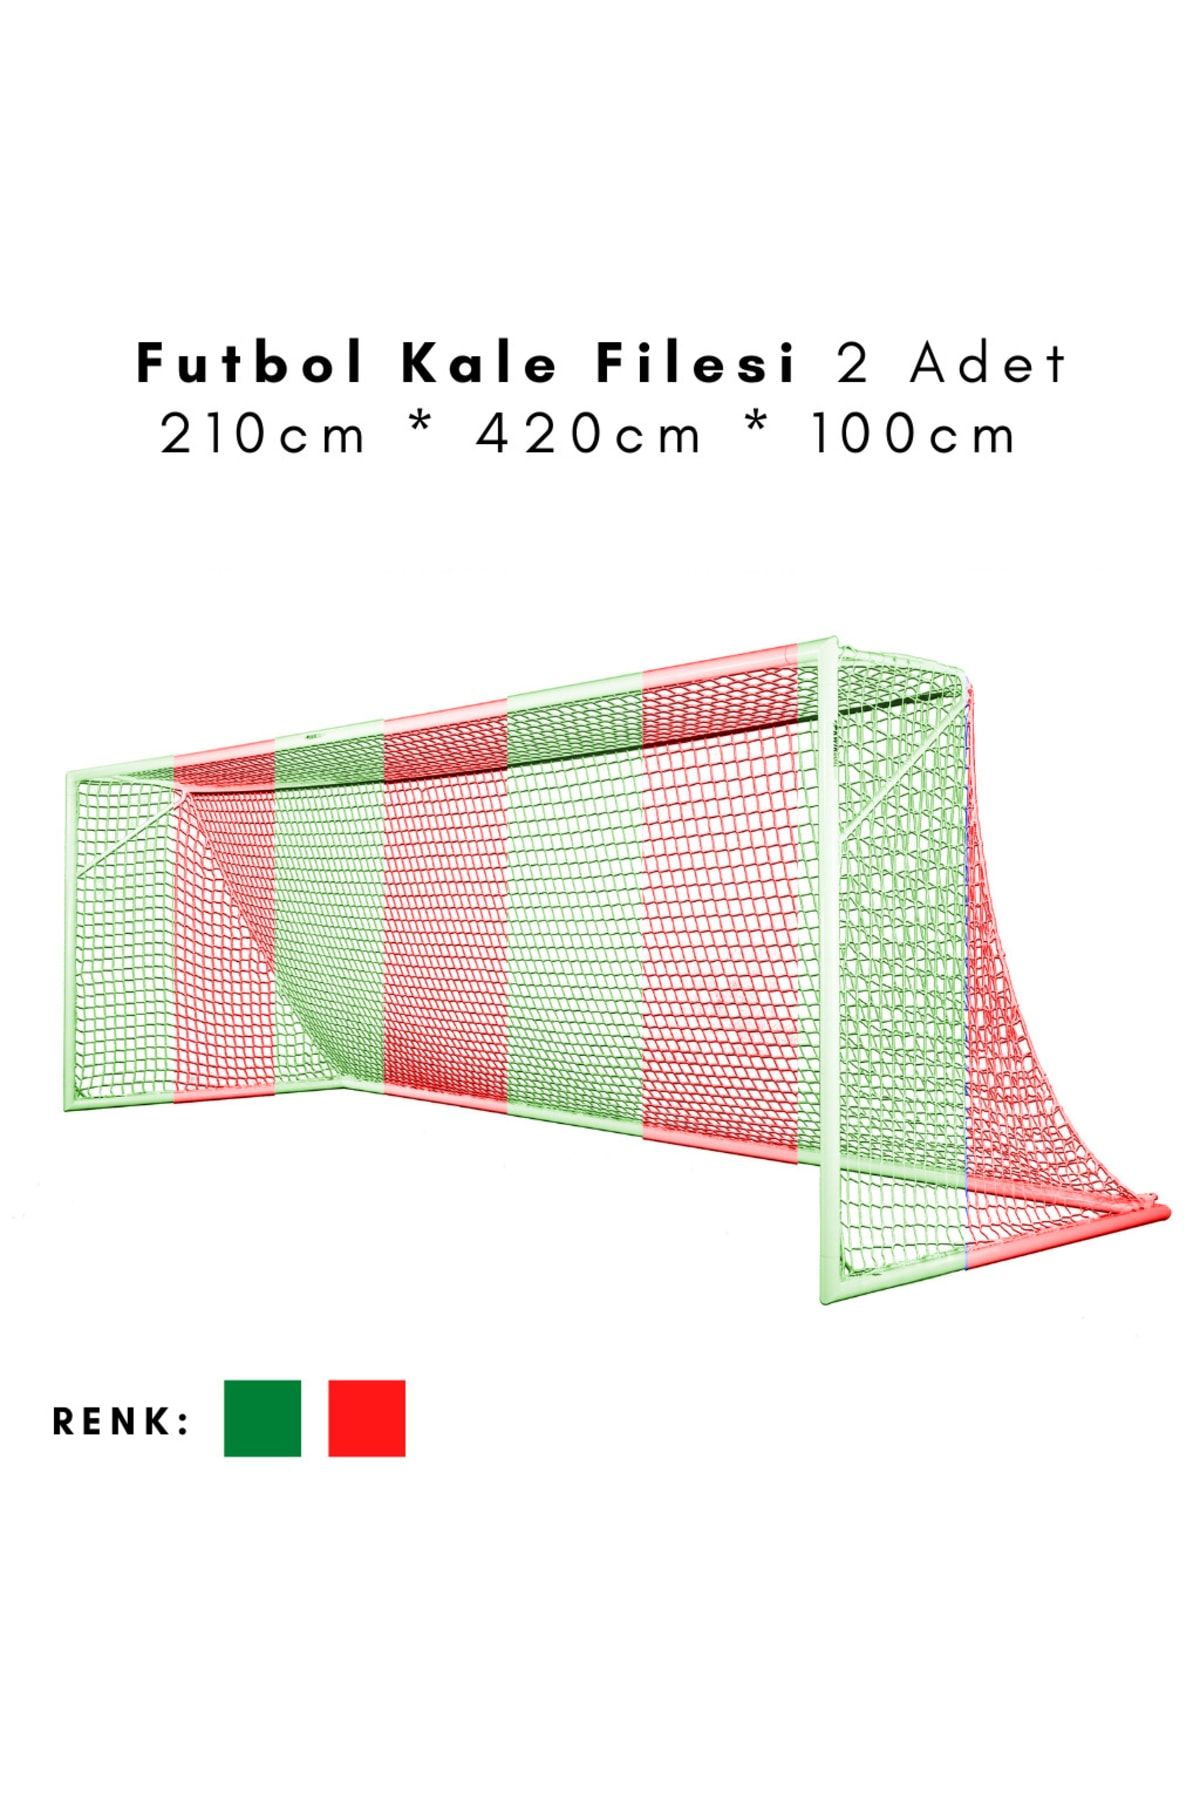 ÖZBEK Futbol Kale Filesi - Halı Saha Kale Ağı 210 * 420 * 100cm (2 Adet File)